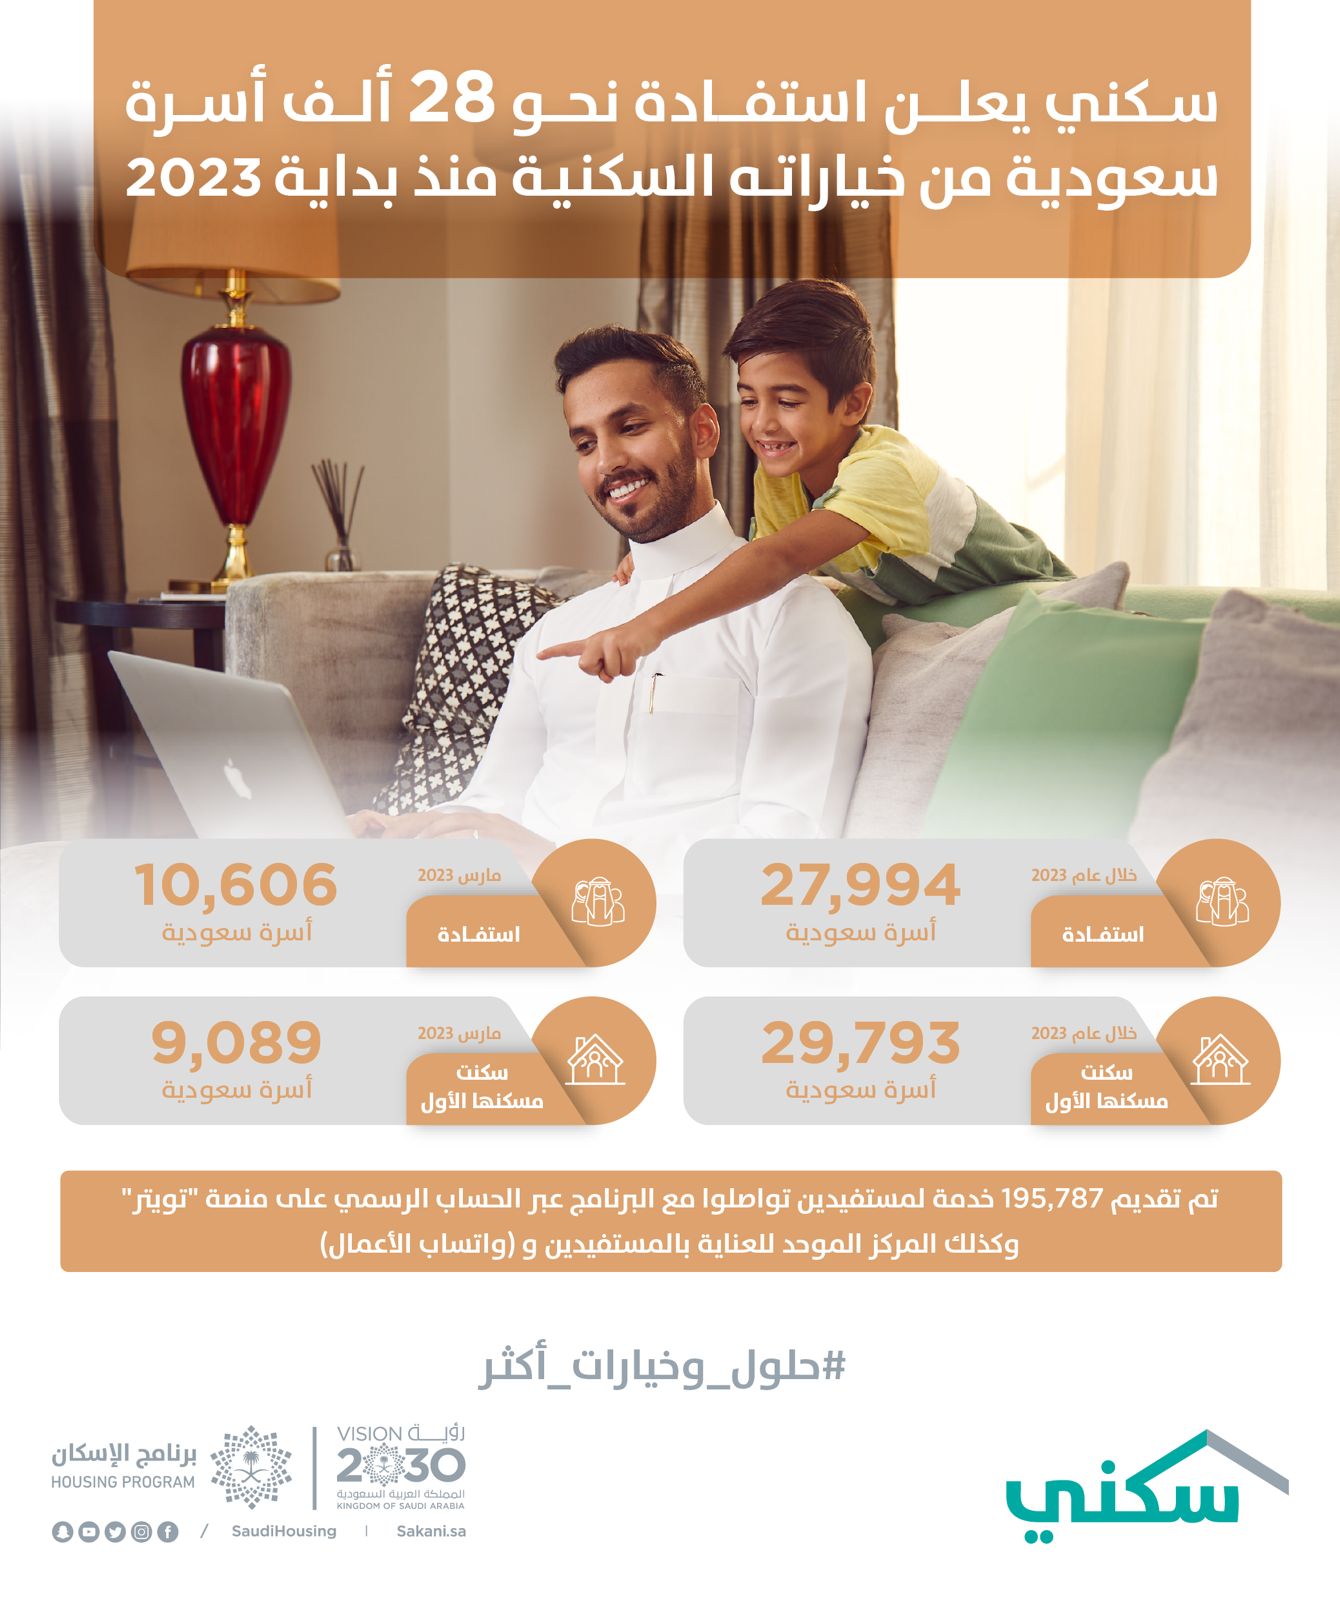 “سكني” يعلن استفادة نحو 28 ألف أسرة سعودية من خياراته السكنية منذ بداية 2023